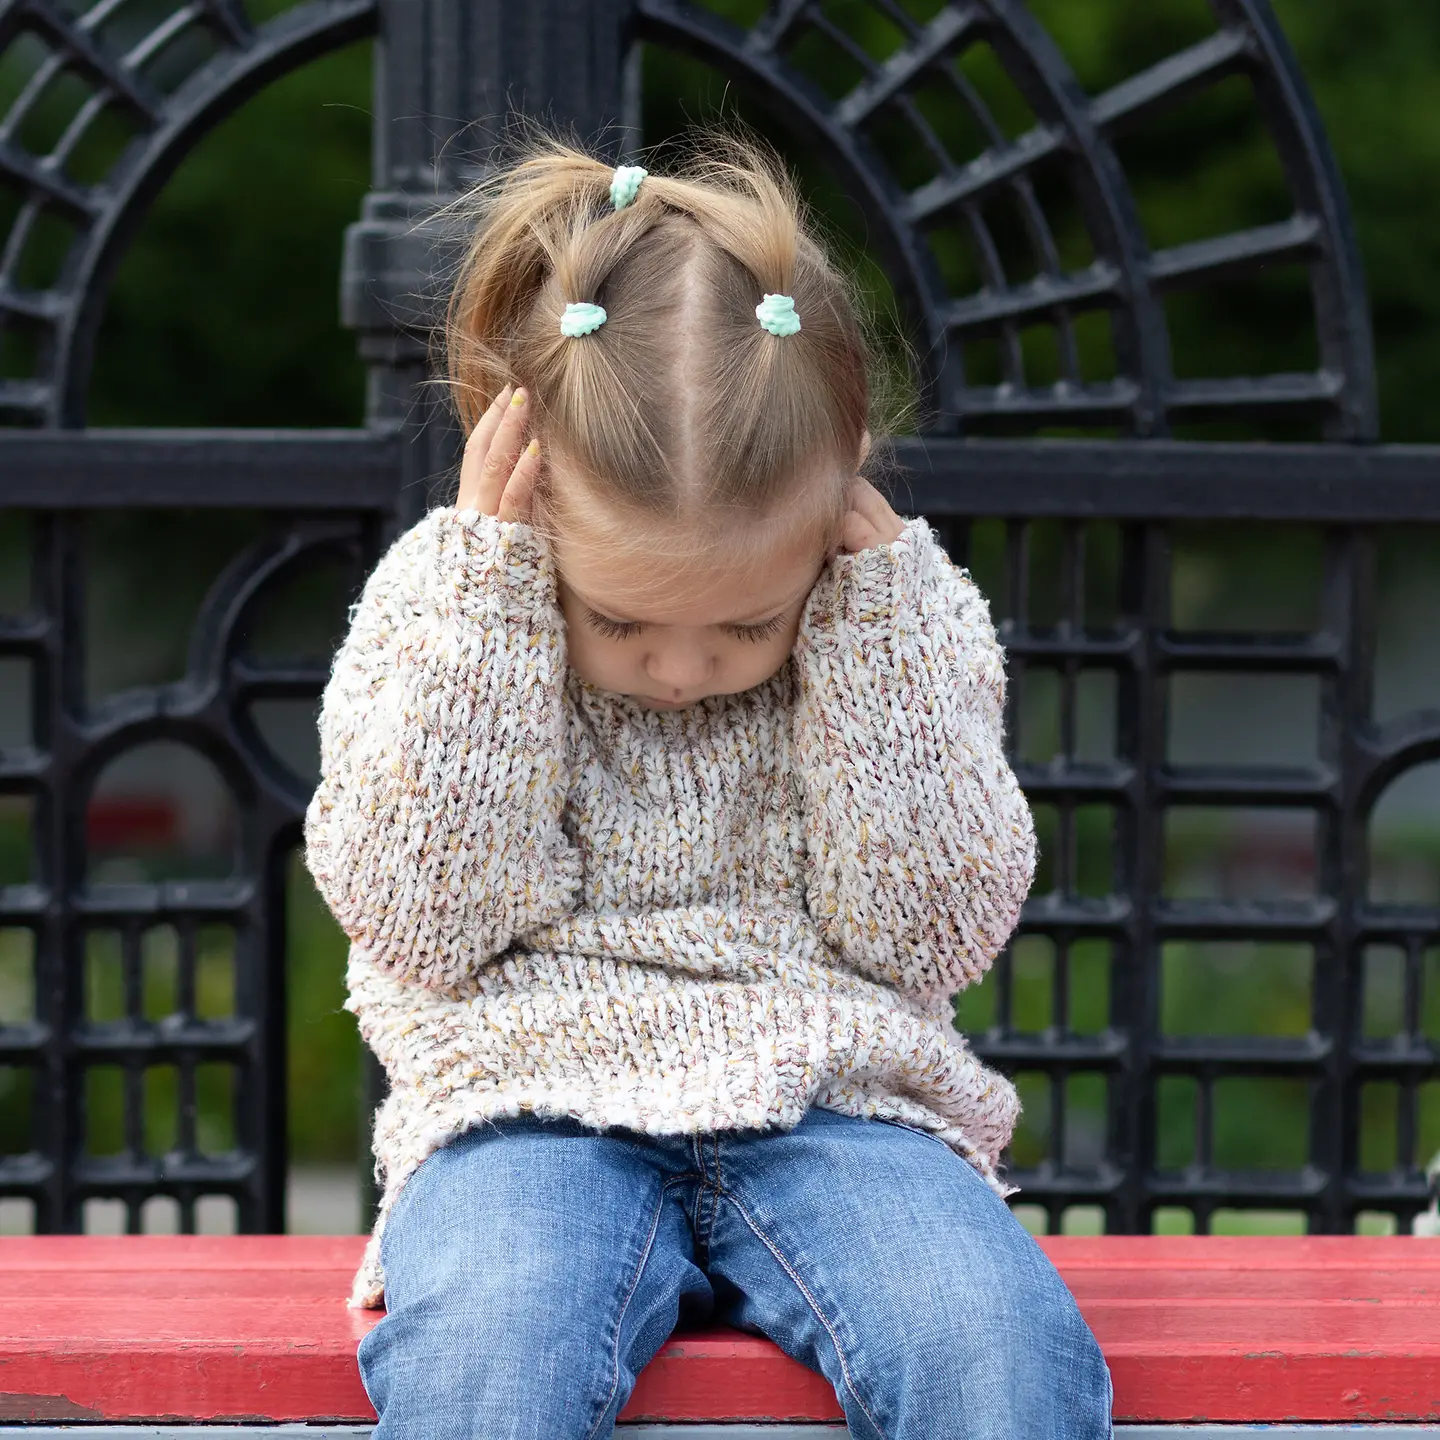 Ein kleines Mädchen sitzt auf einer Bank und hält sich die Ohren fest